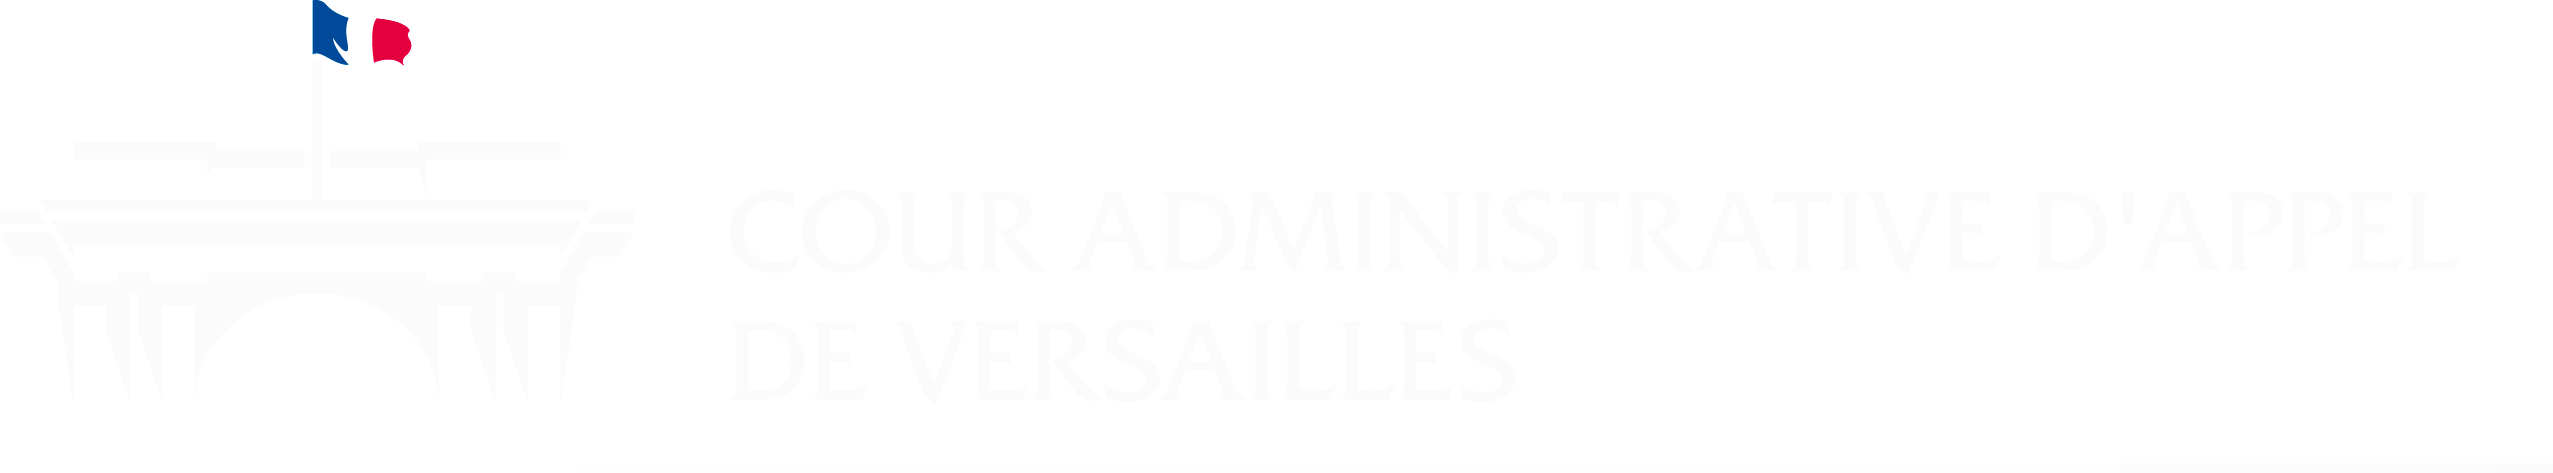 Logo Cour administrative d'appel de Versailles